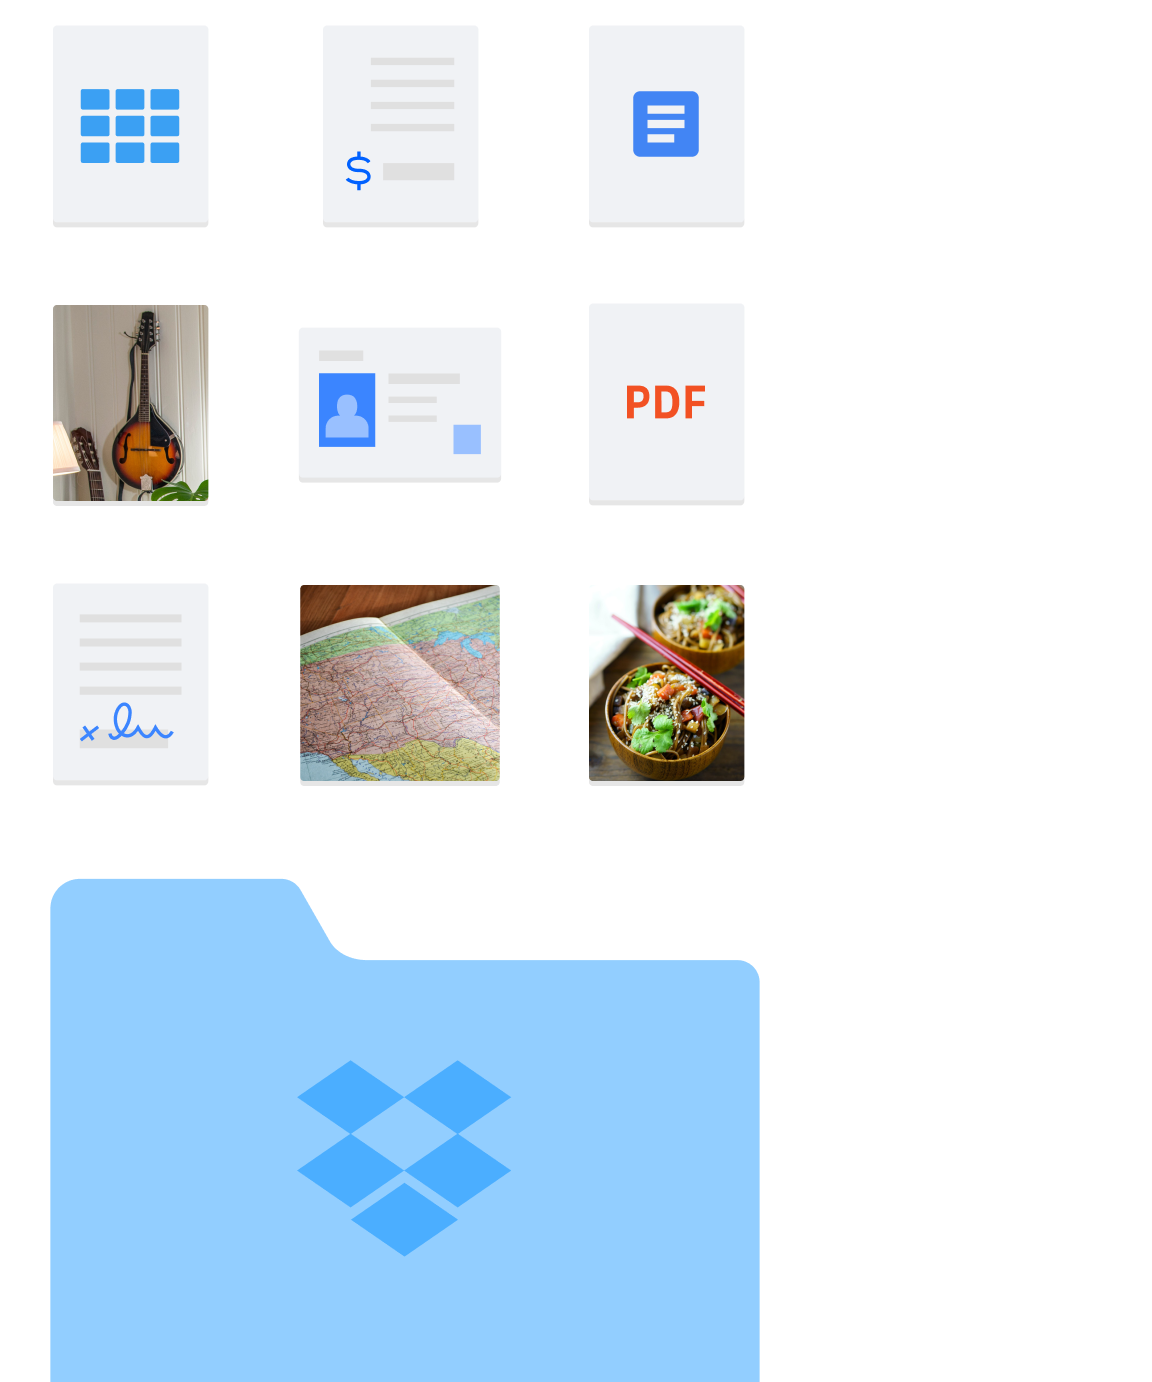 Bilde av forskjellige mapper og filtyper, for eksempel bilder og dokumenter, som finnes i Dropbox.